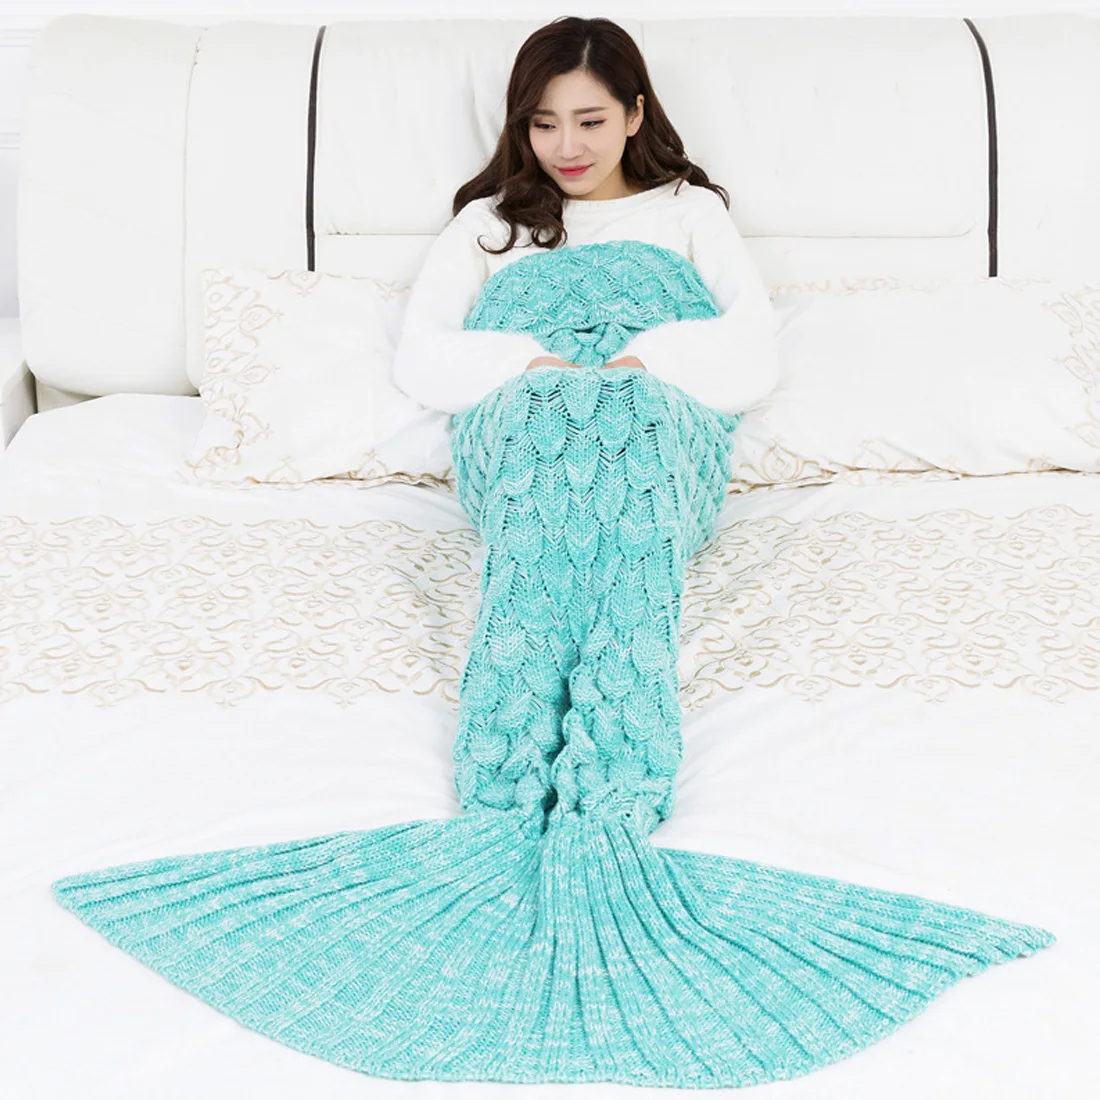 Красочное одеяло «русалка», теплое Покрывало «хвост русалки» для дивана, спальни, взрослых и детей, для отдыха, сна, вязанное крючком одеяло s - Цвет: Green